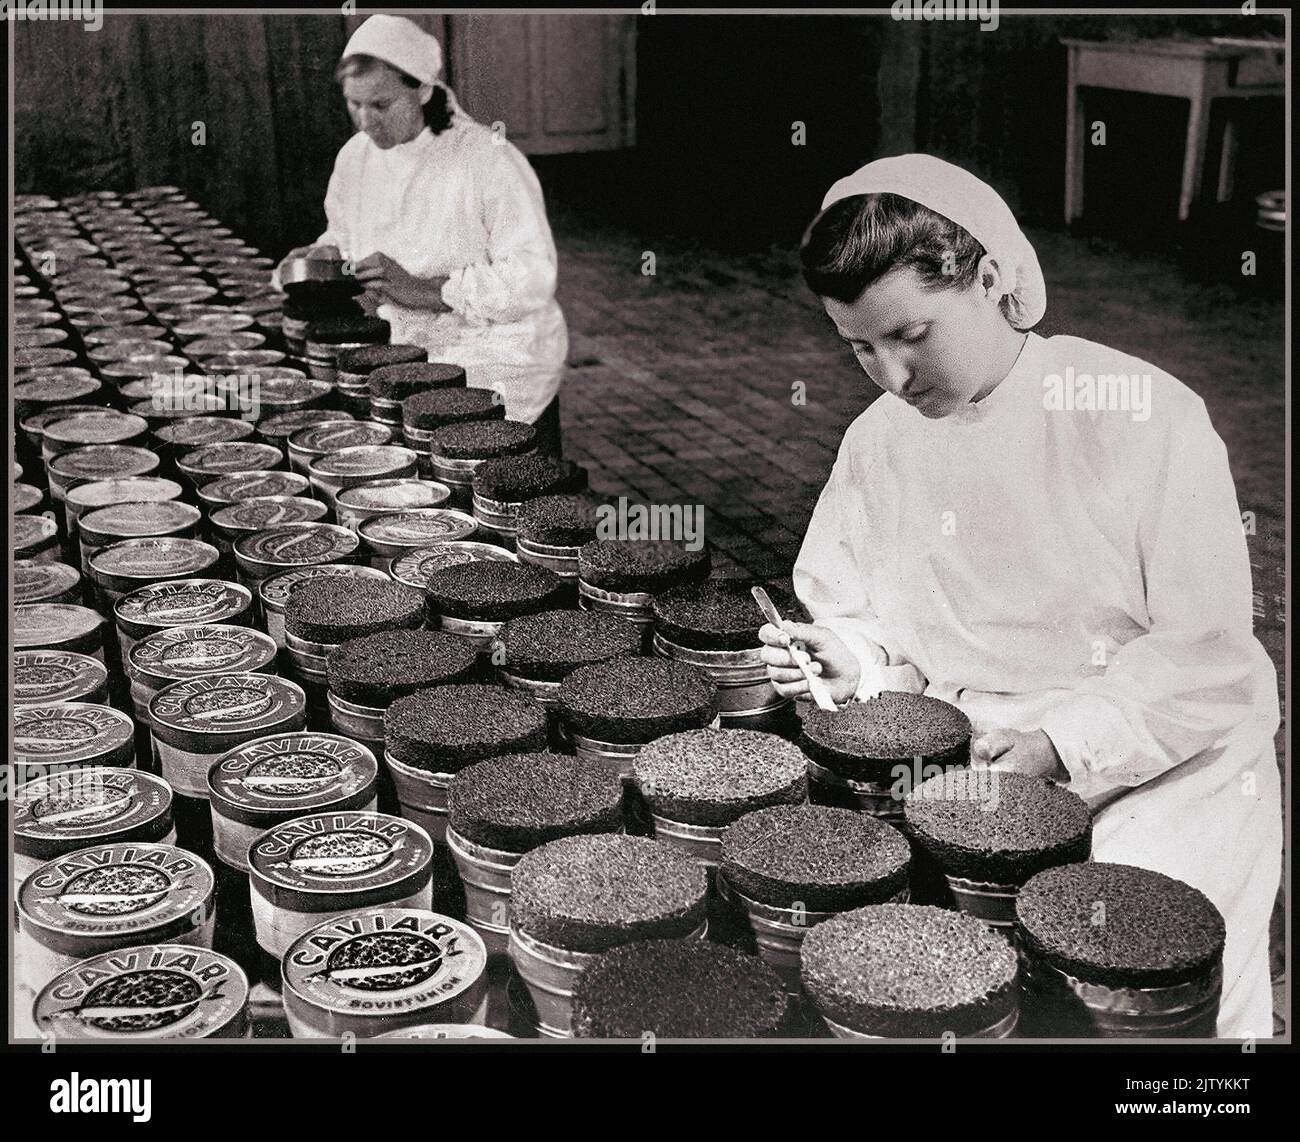 KAVIAR Jahrgang Beluga Kaviar Produktion Konservenproduktion und Qualitätskontrolllinie für den Export in Kirov Fischerei Aserbaidschan UdSSR 1940s Stockfoto